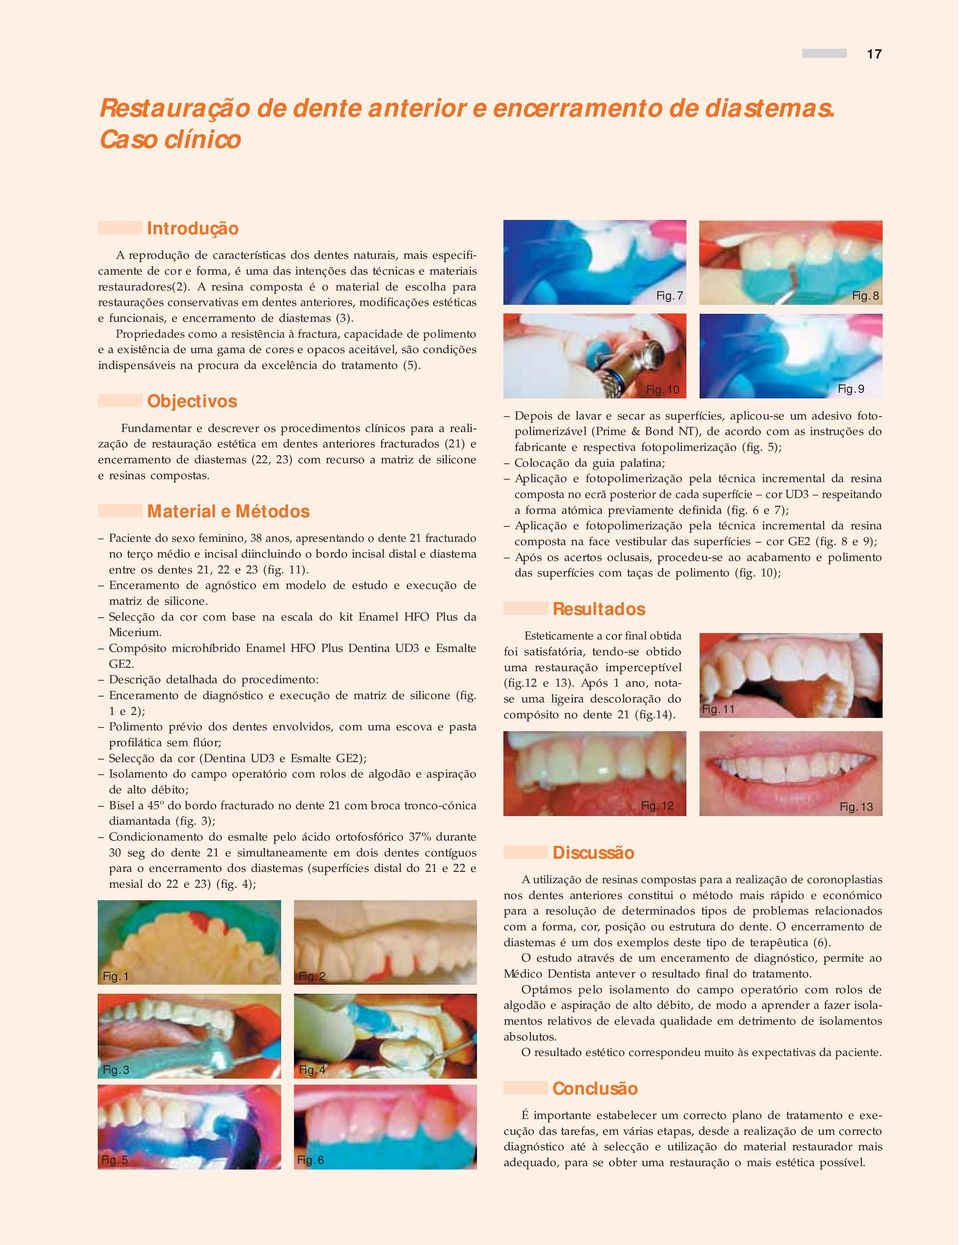 A resina composta é o material de escolha para restaurações conservativas em dentes anteriores, modificações estéticas e funcionais, e encerramento de diastemas (3).